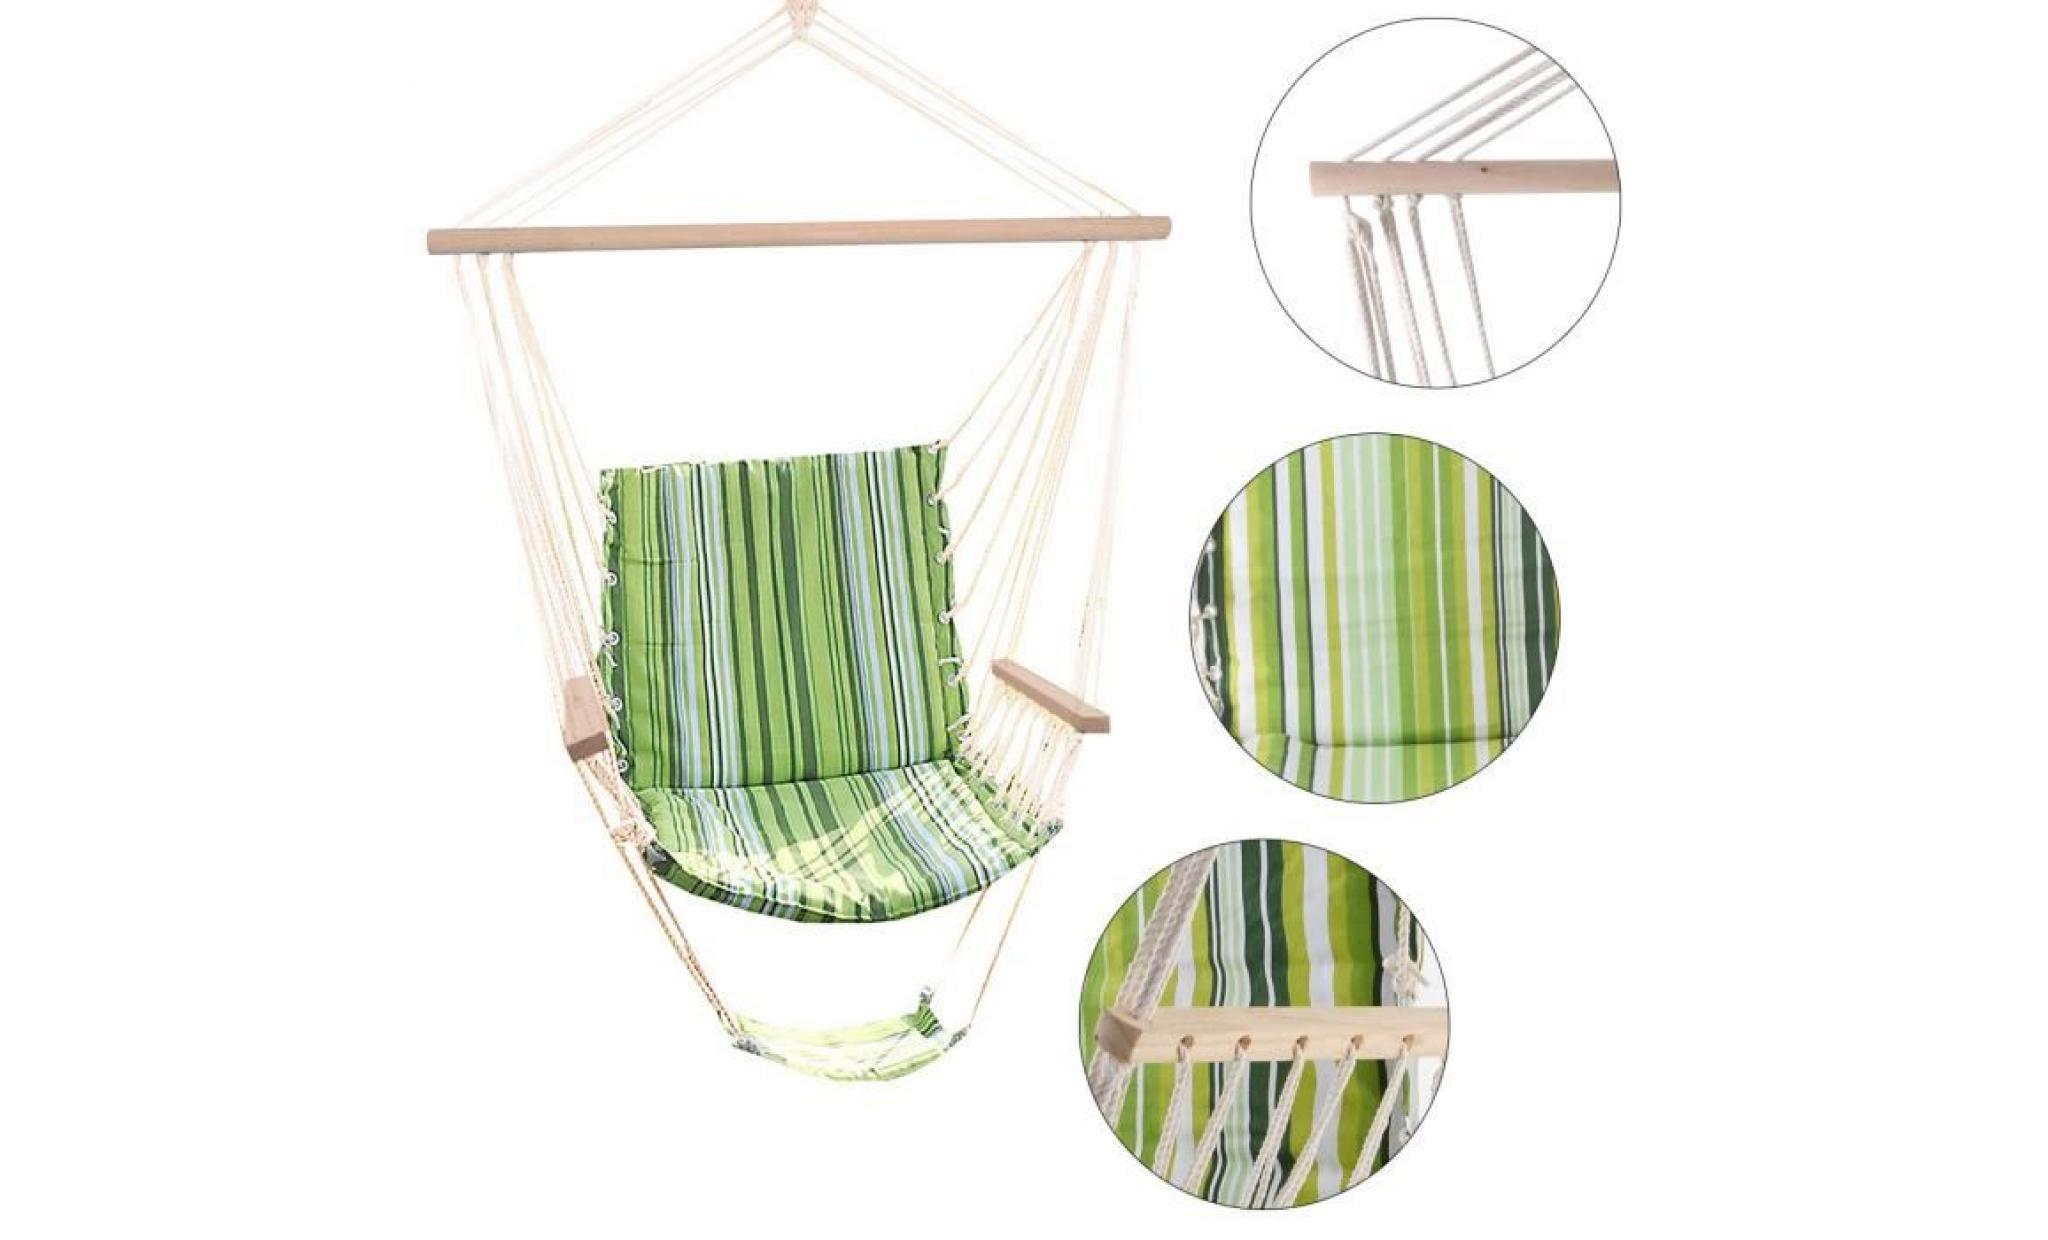 costway chaise suspendue chaise fauteuil hamac chaise hamac avec support en coton fauteuil suspendu100 x 58 cm vert pas cher